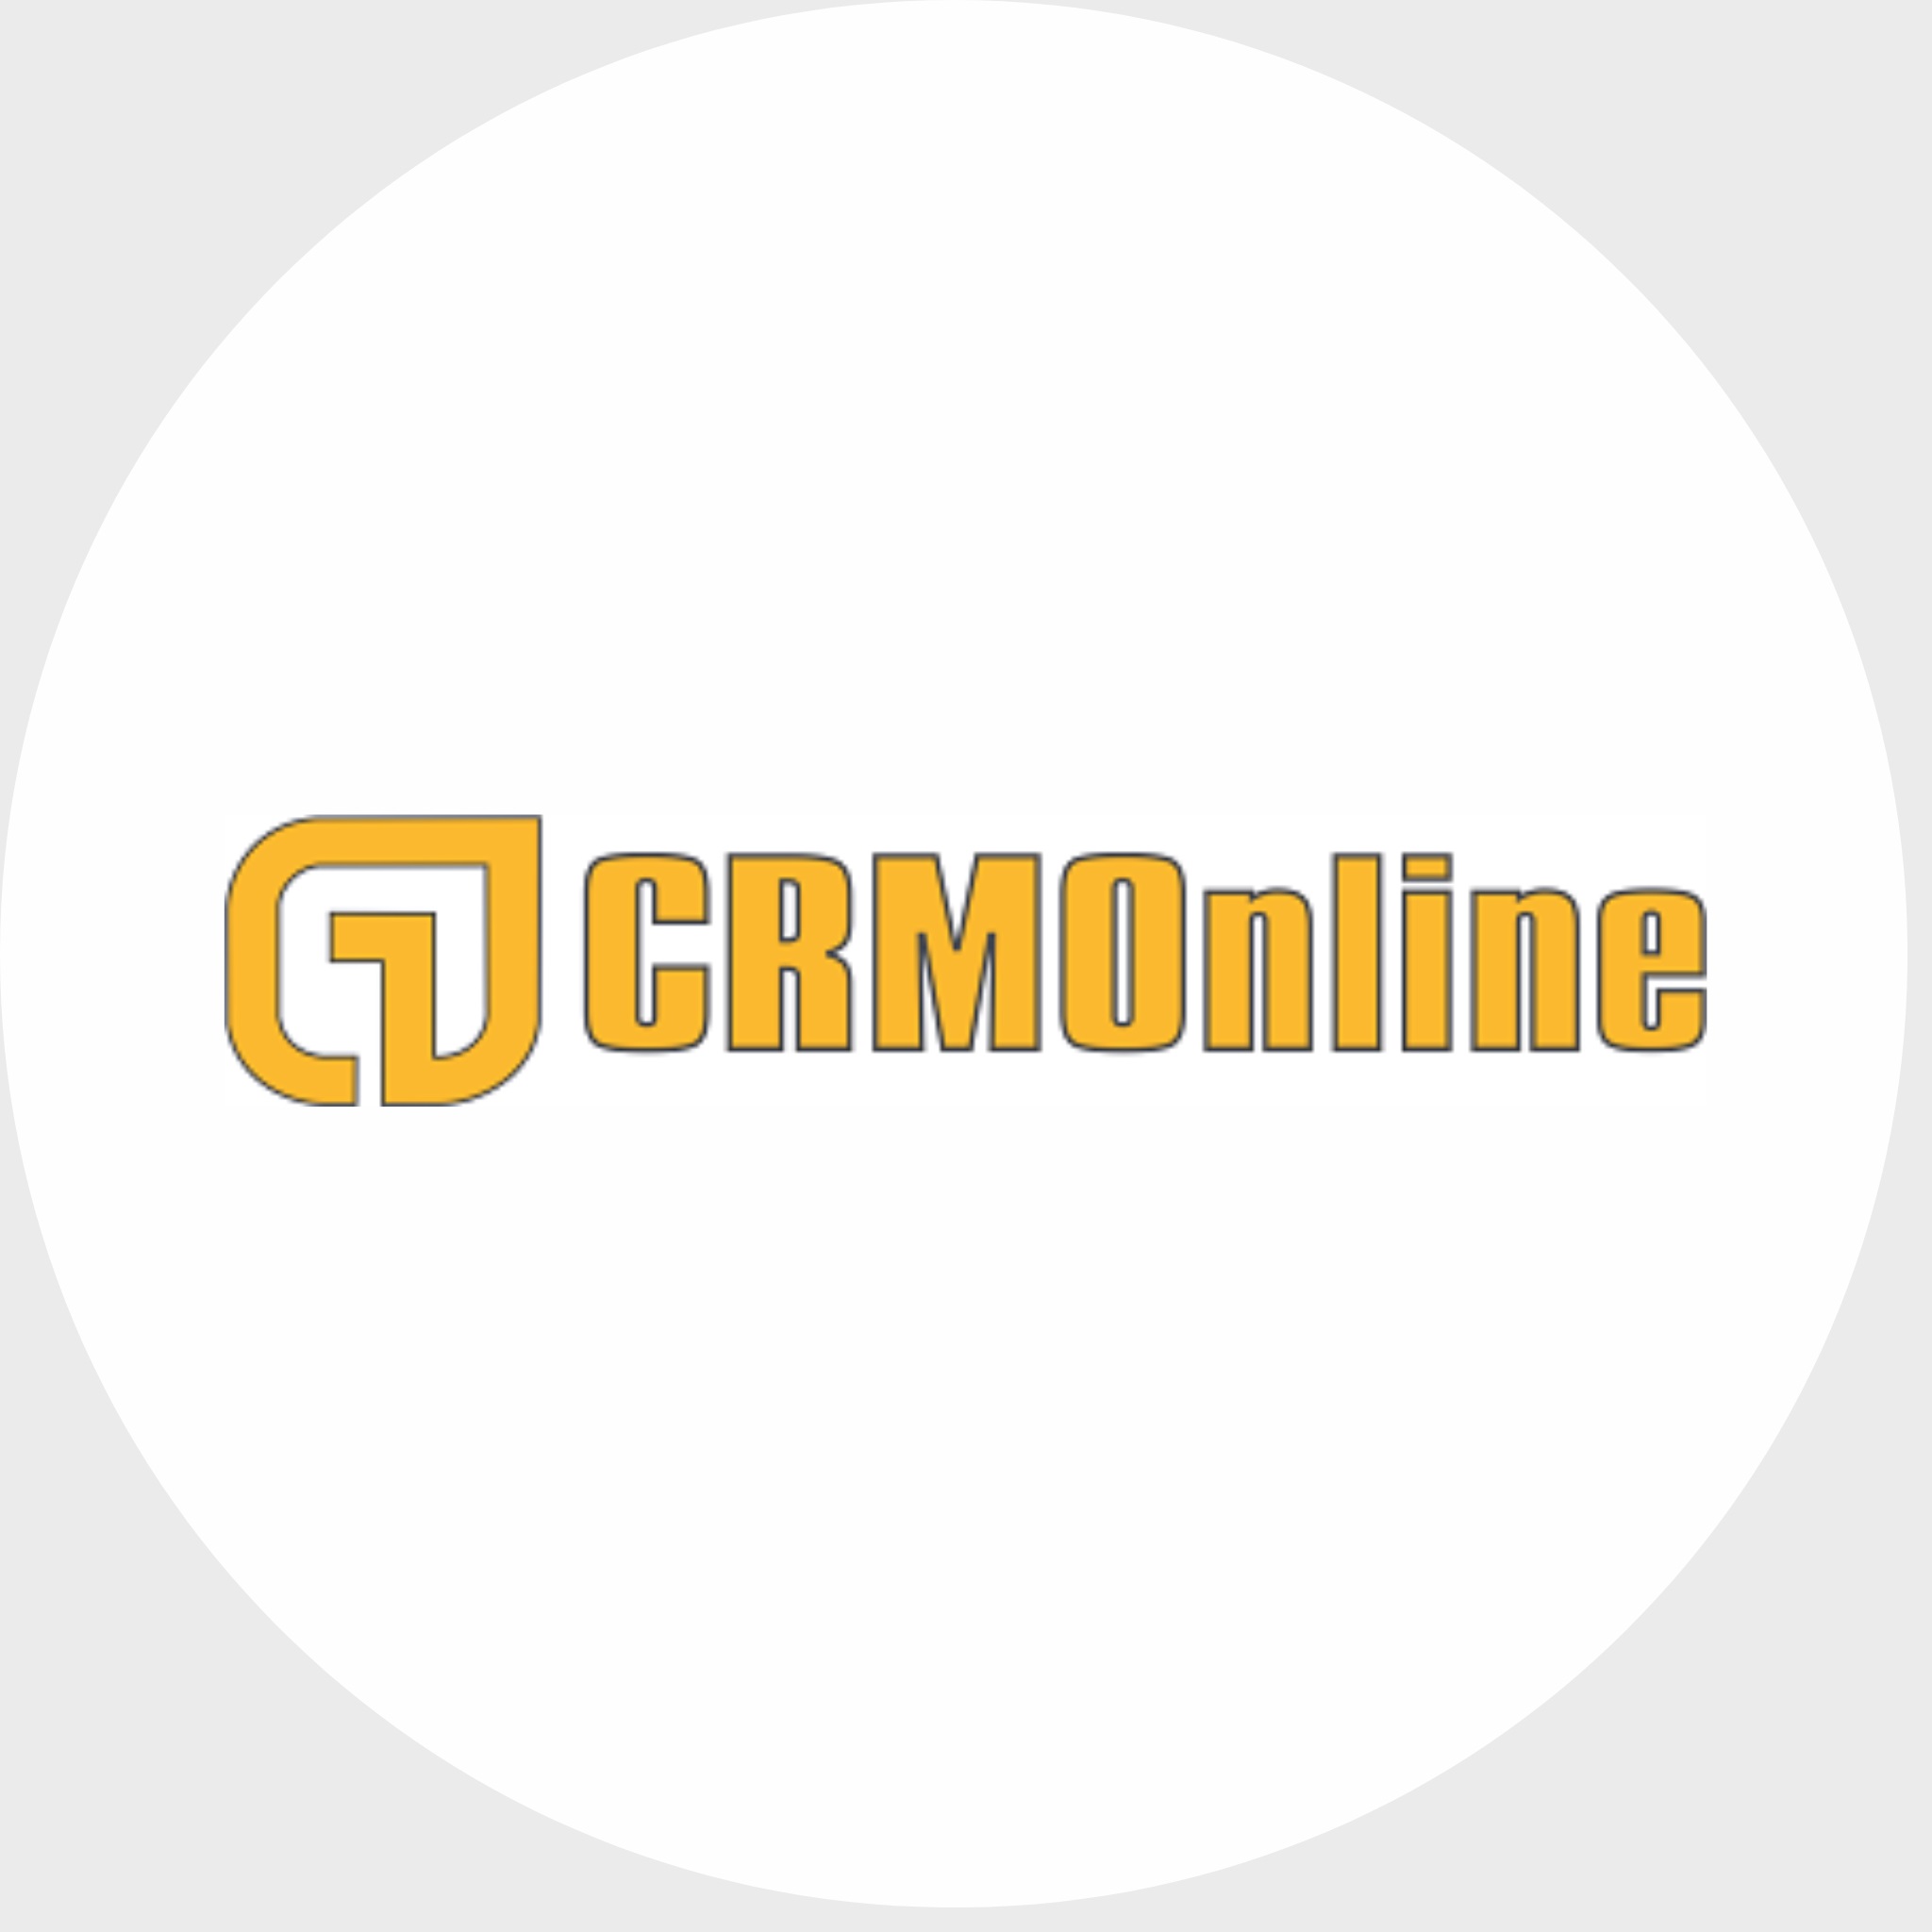 CRM Phần mềm crmonline nền tảng và công cụ chuyển đổi số cho mọi doanh nghiệp. https://bit.ly/2wKDAwO